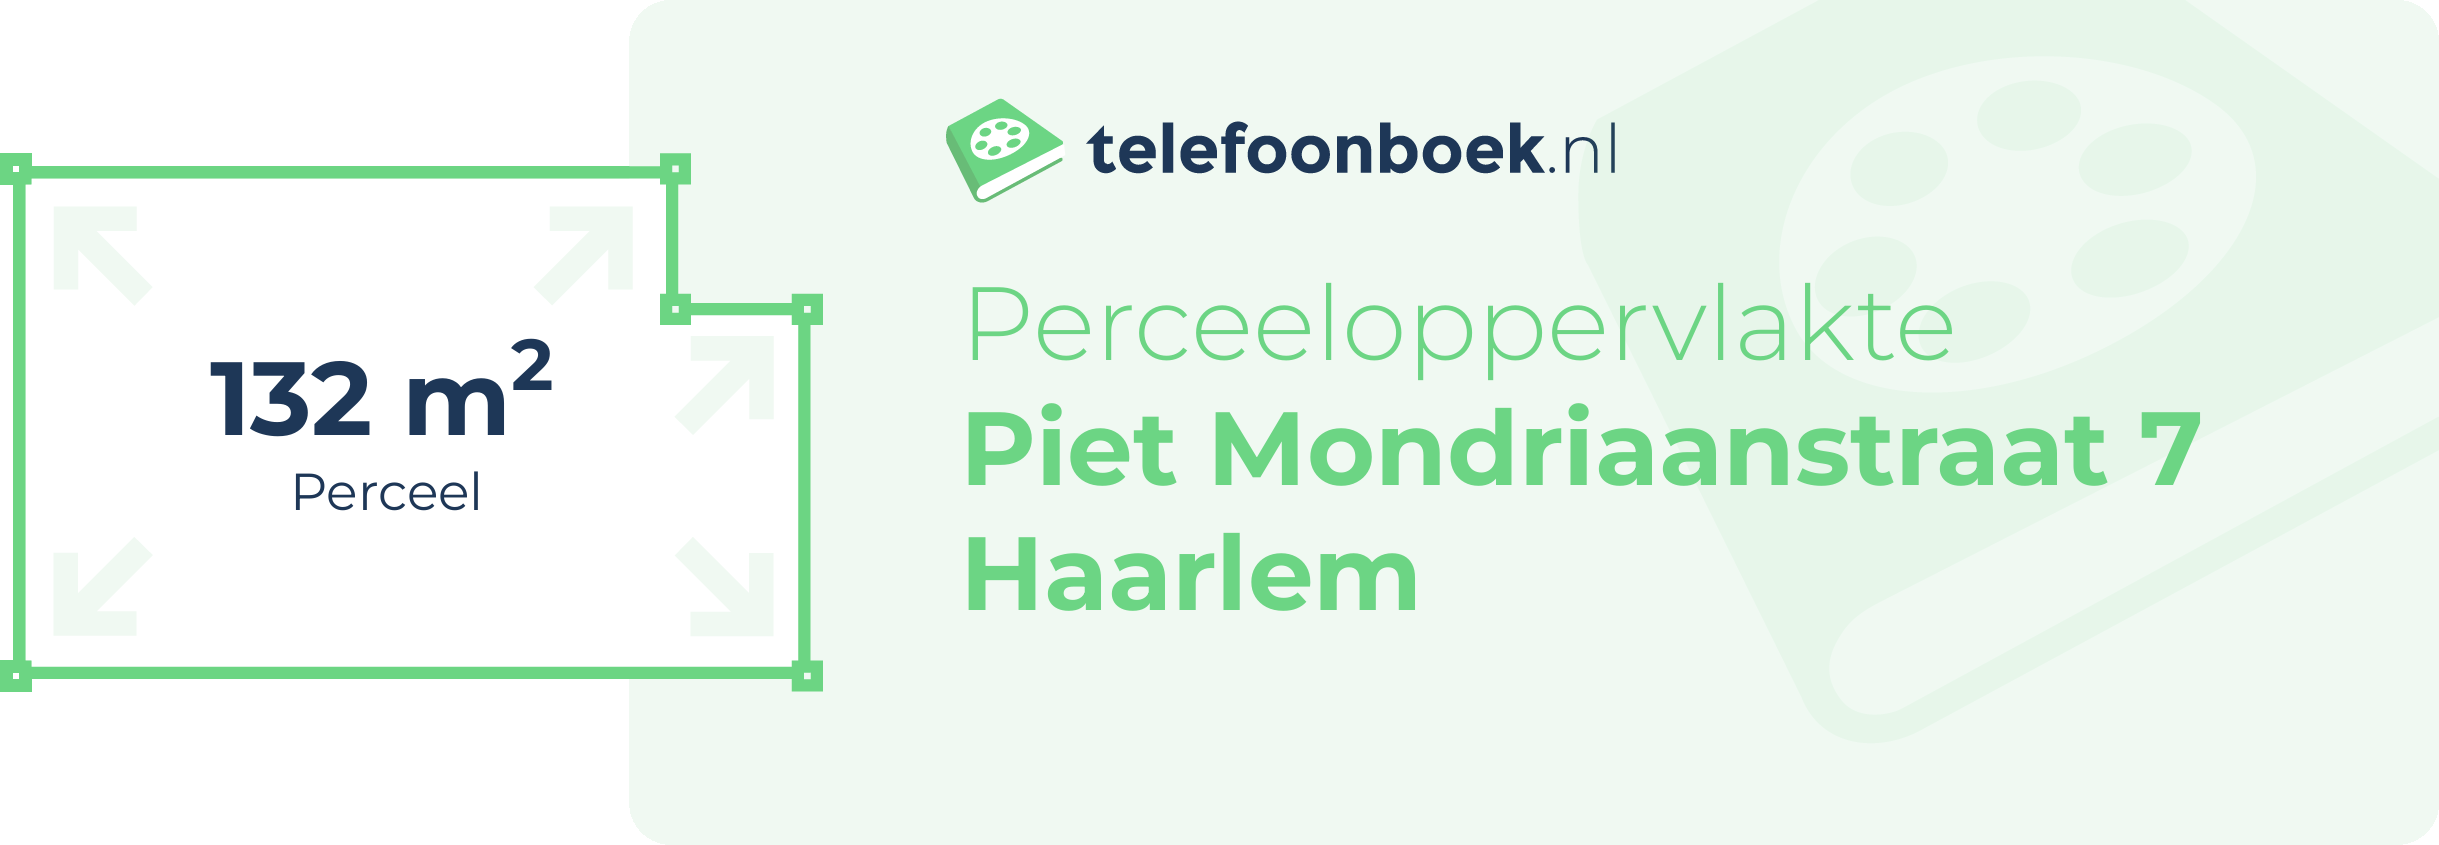 Perceeloppervlakte Piet Mondriaanstraat 7 Haarlem